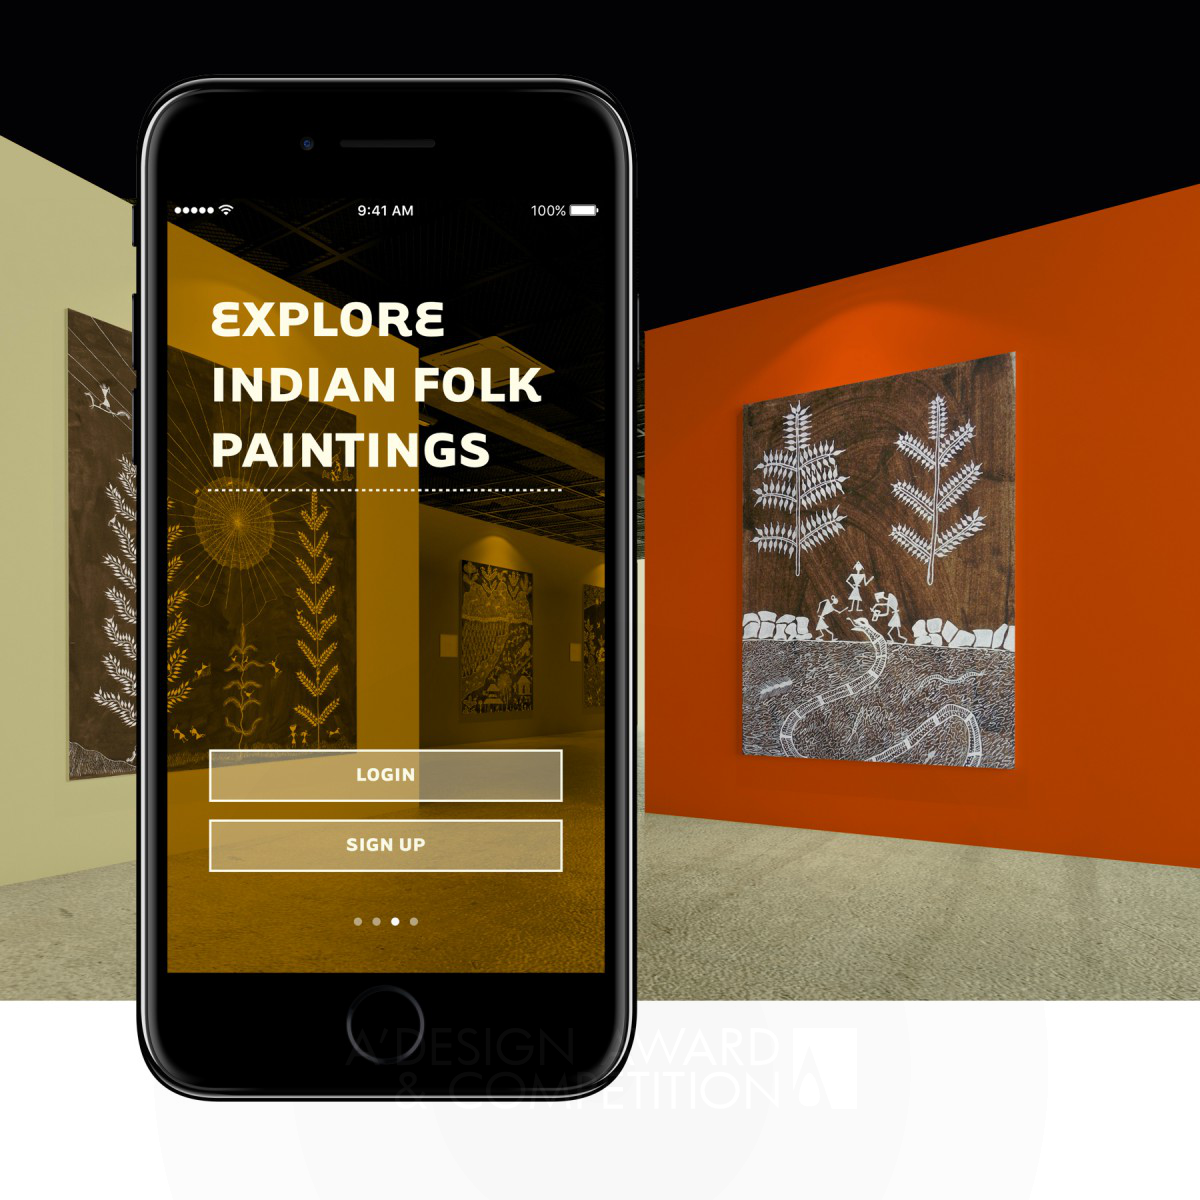 مؤسسة كالا: منصة جديدة لعرض الرسوم الهندية الشعبية